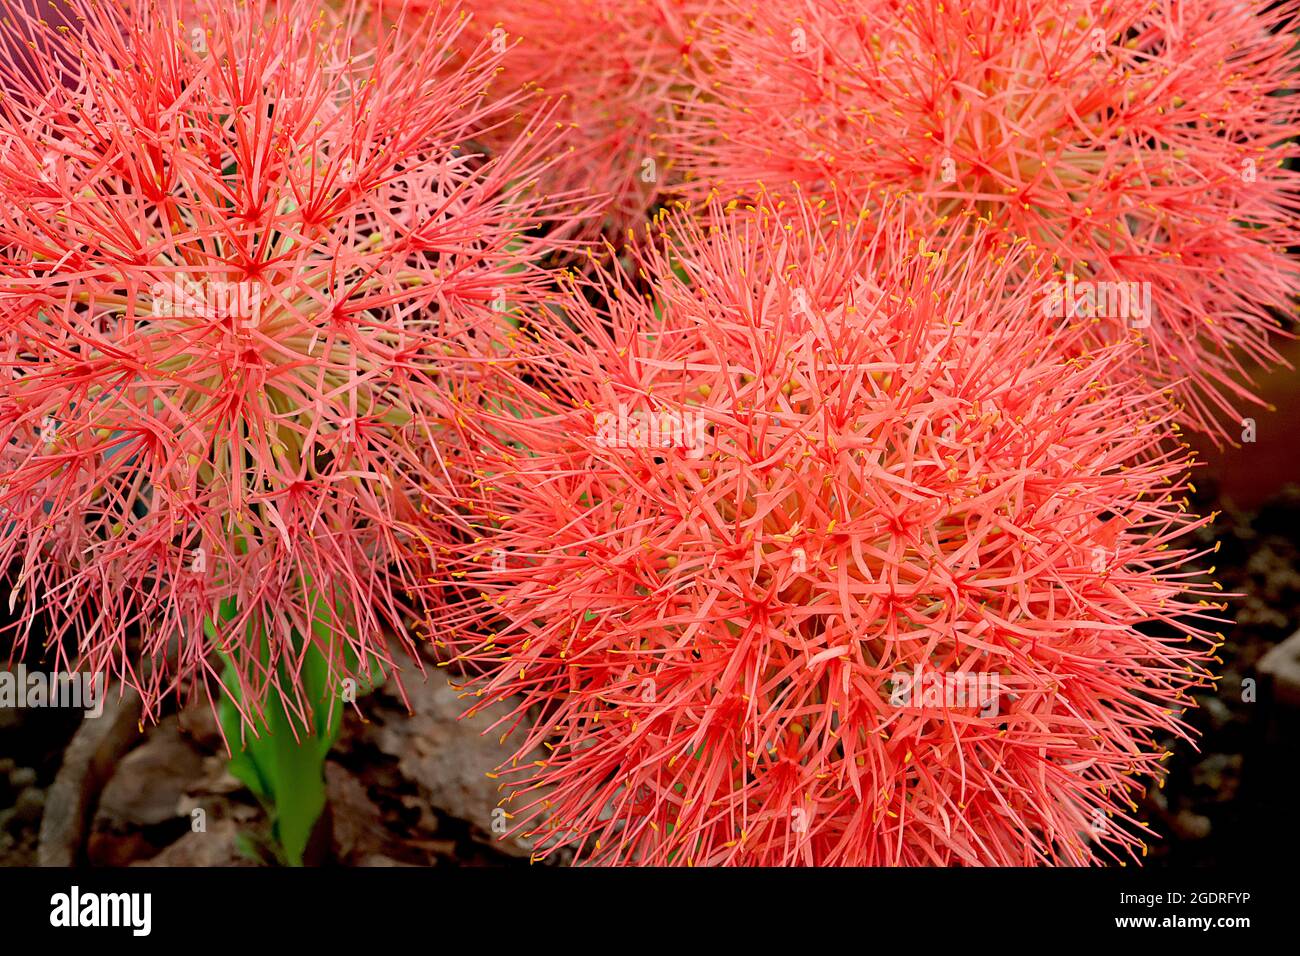 Scaxodus multiflorus blood Lily – grandi gruppi sferici di fiori simili all'allio con petali rossi arancioni molto stretti su steli molto spessi, luglio, Regno Unito Foto Stock